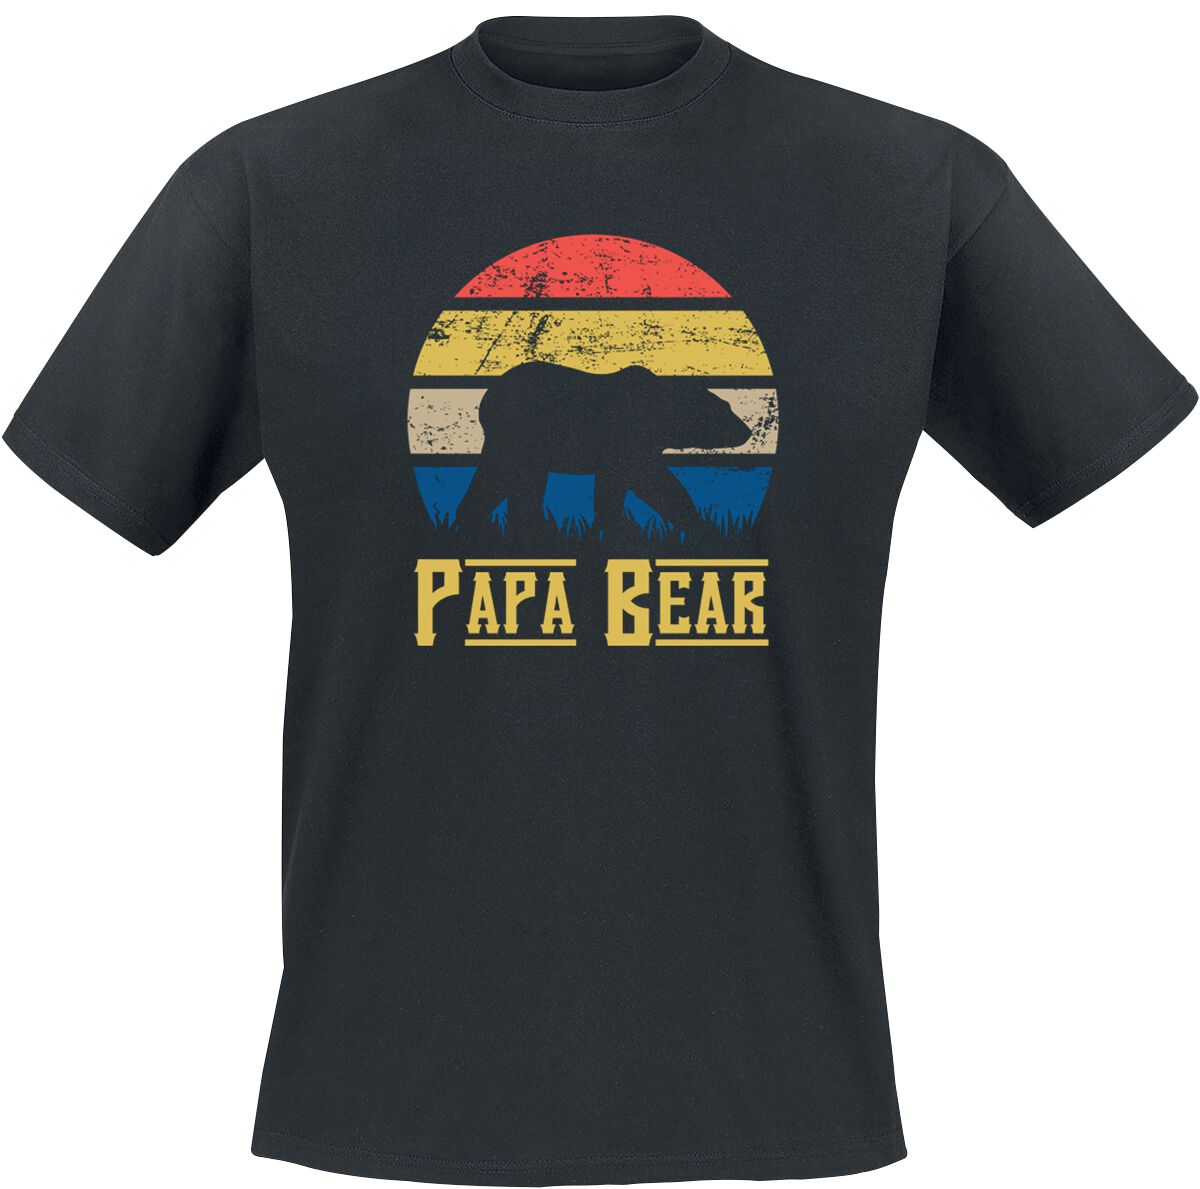 Familie & Freunde T-Shirt - Papa Bear - S bis 5XL - für Männer - Größe XL - schwarz